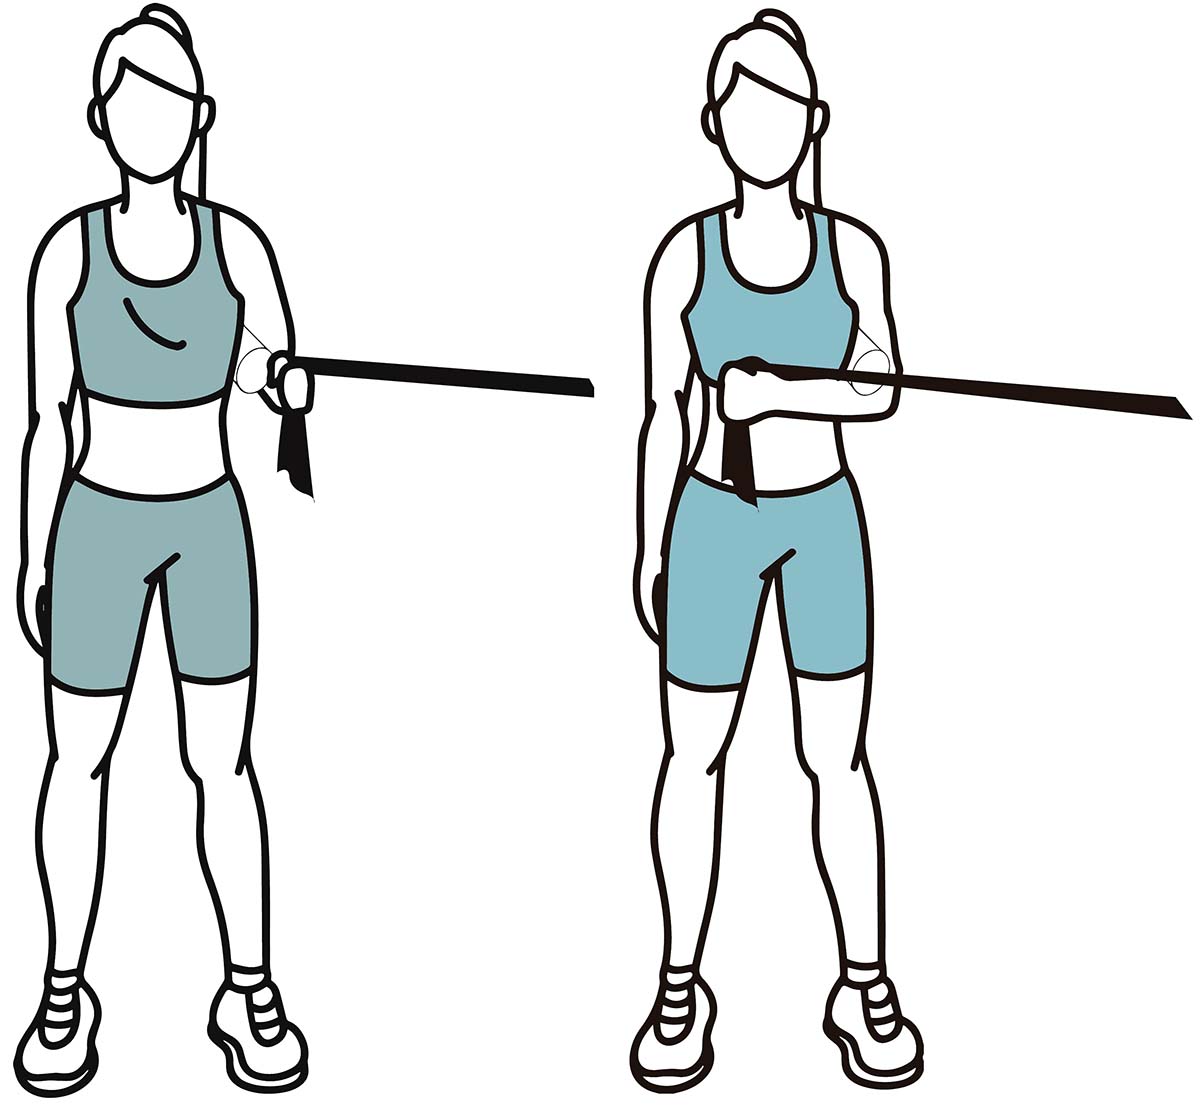 Exercises for shoulder pain: Internal Shoulder Rotation